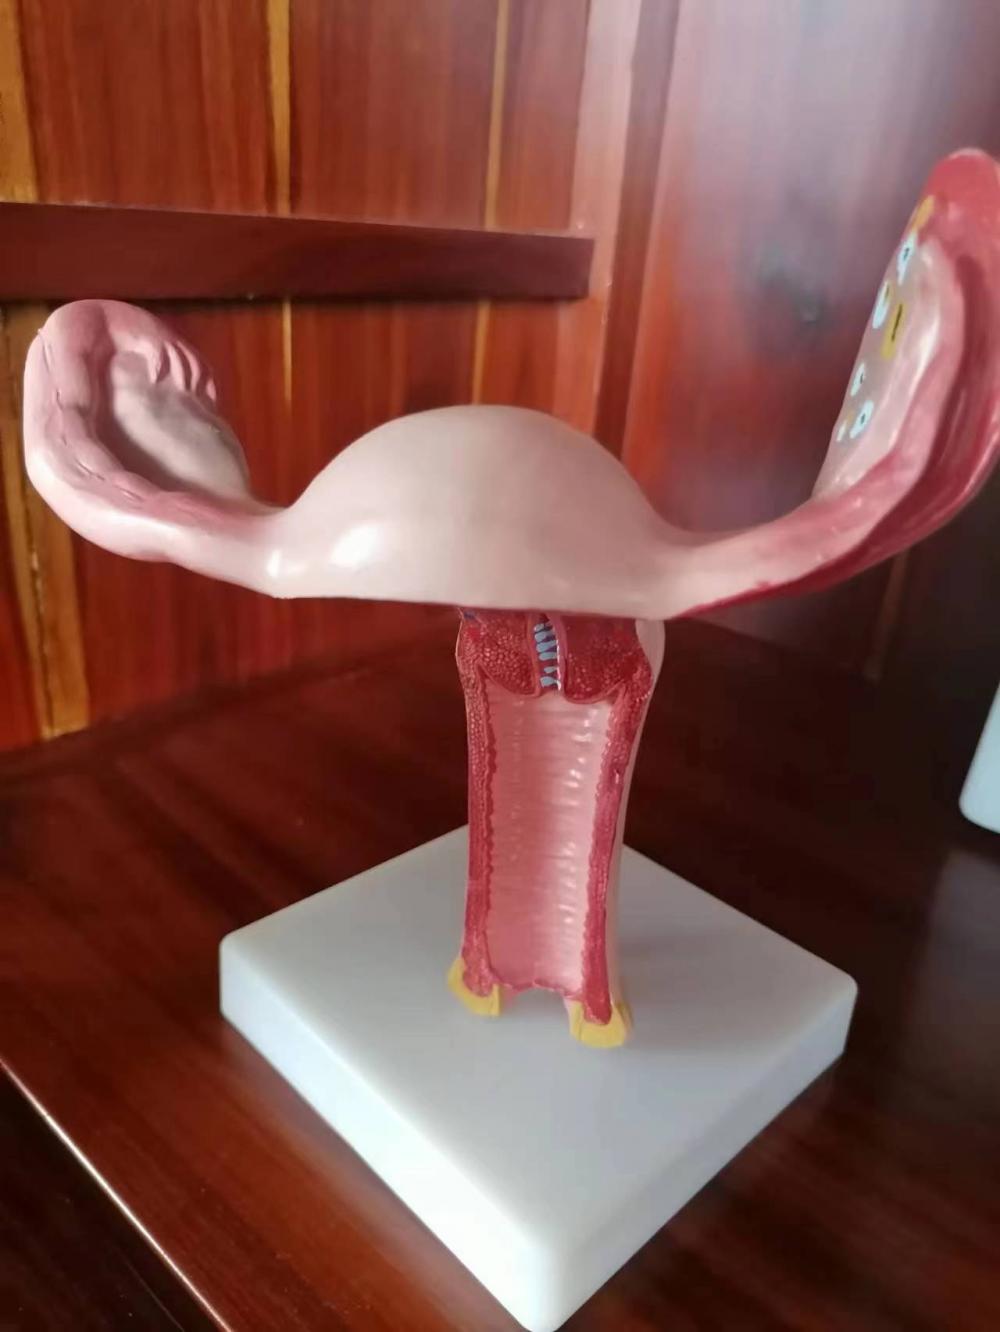 Uterus Model with Pathology